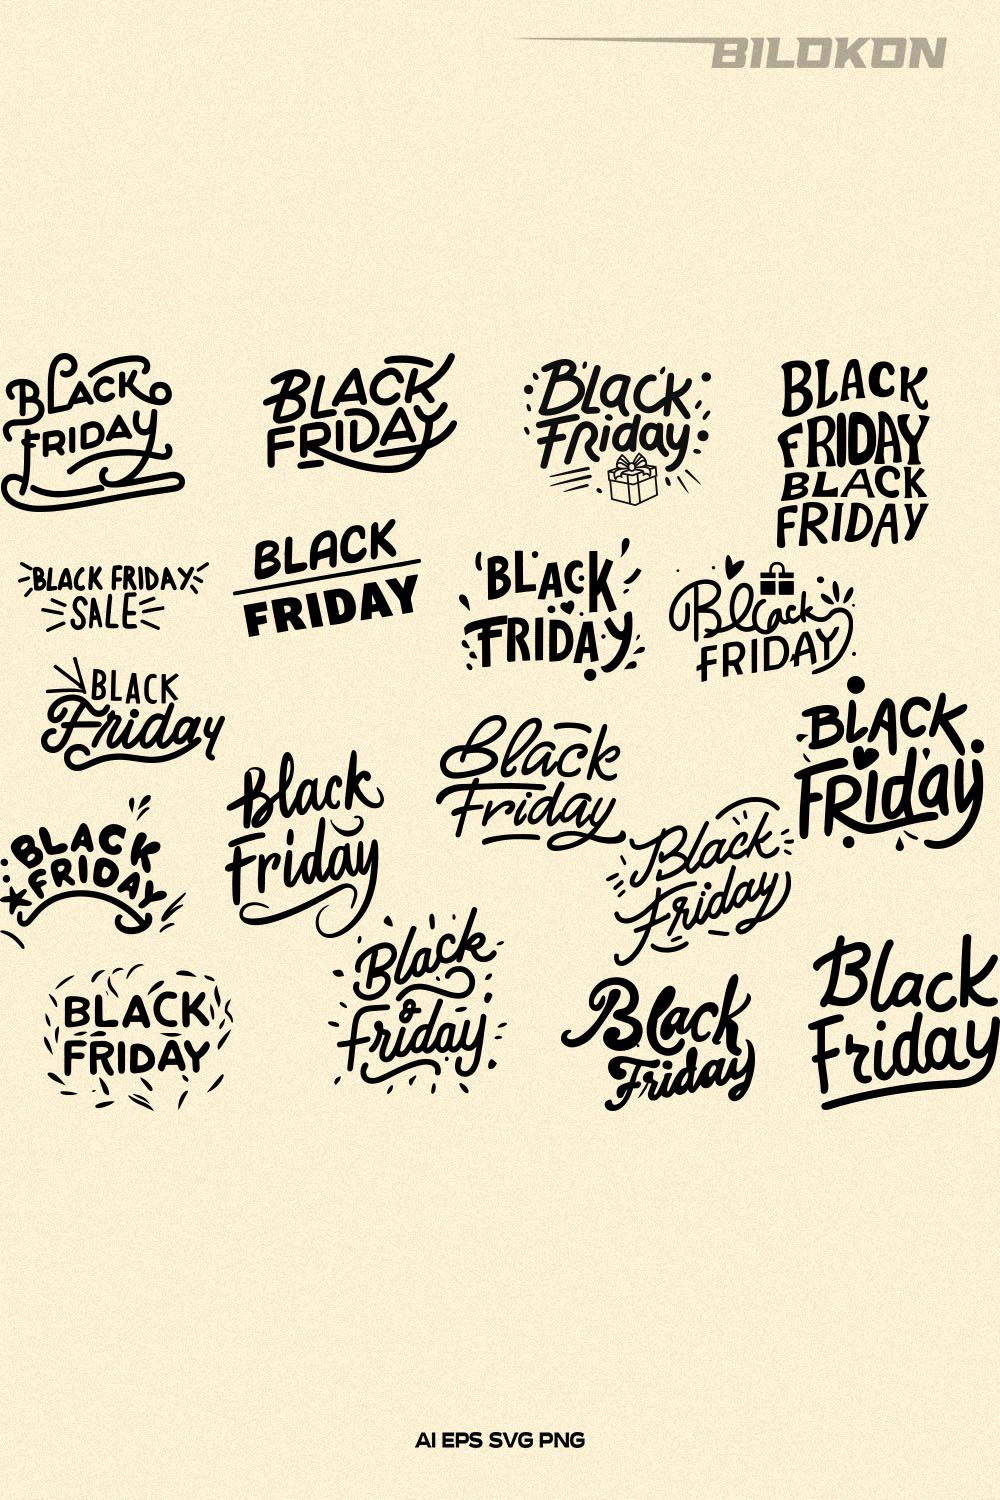 Black Friday SVG Bundle 18 File, Black Friday Sale Vector pinterest preview image.